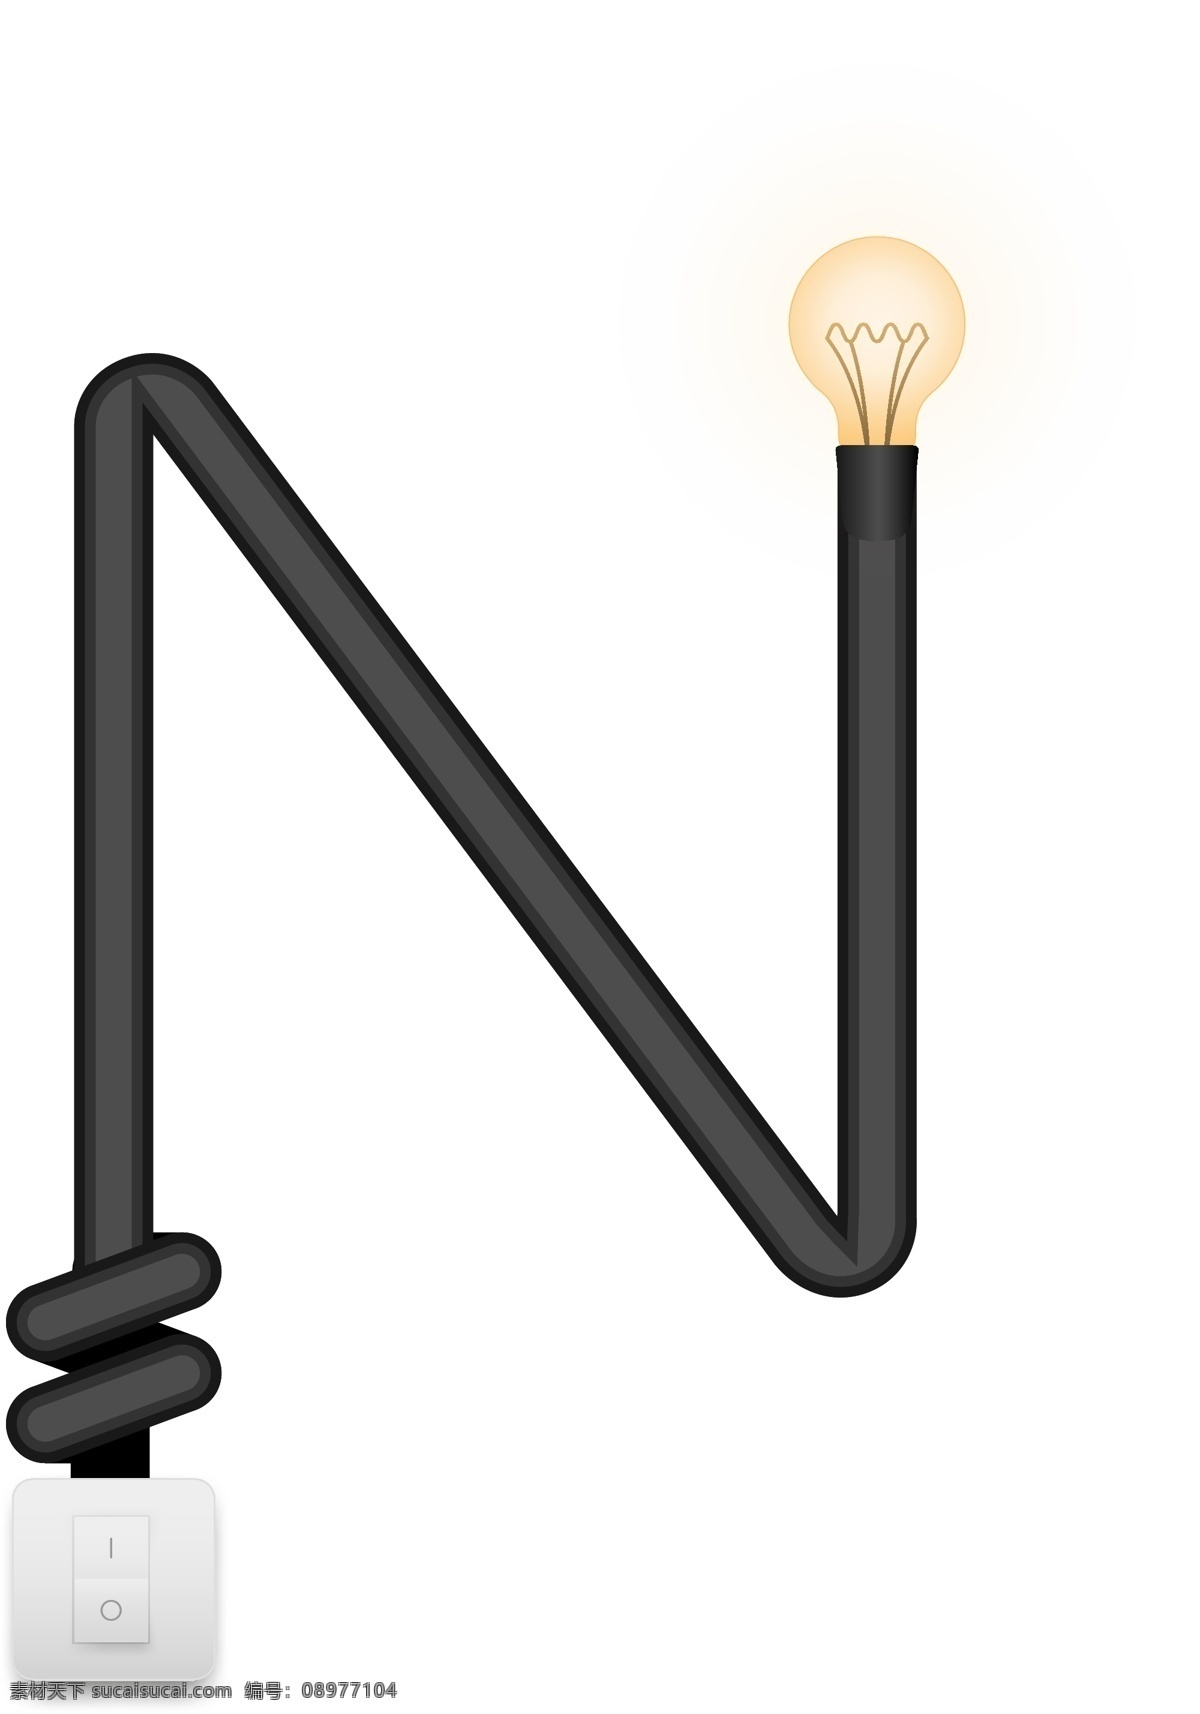 创意 矢量 灯光 字母 灯管 插座 字母n 创意灯光 灯管插座